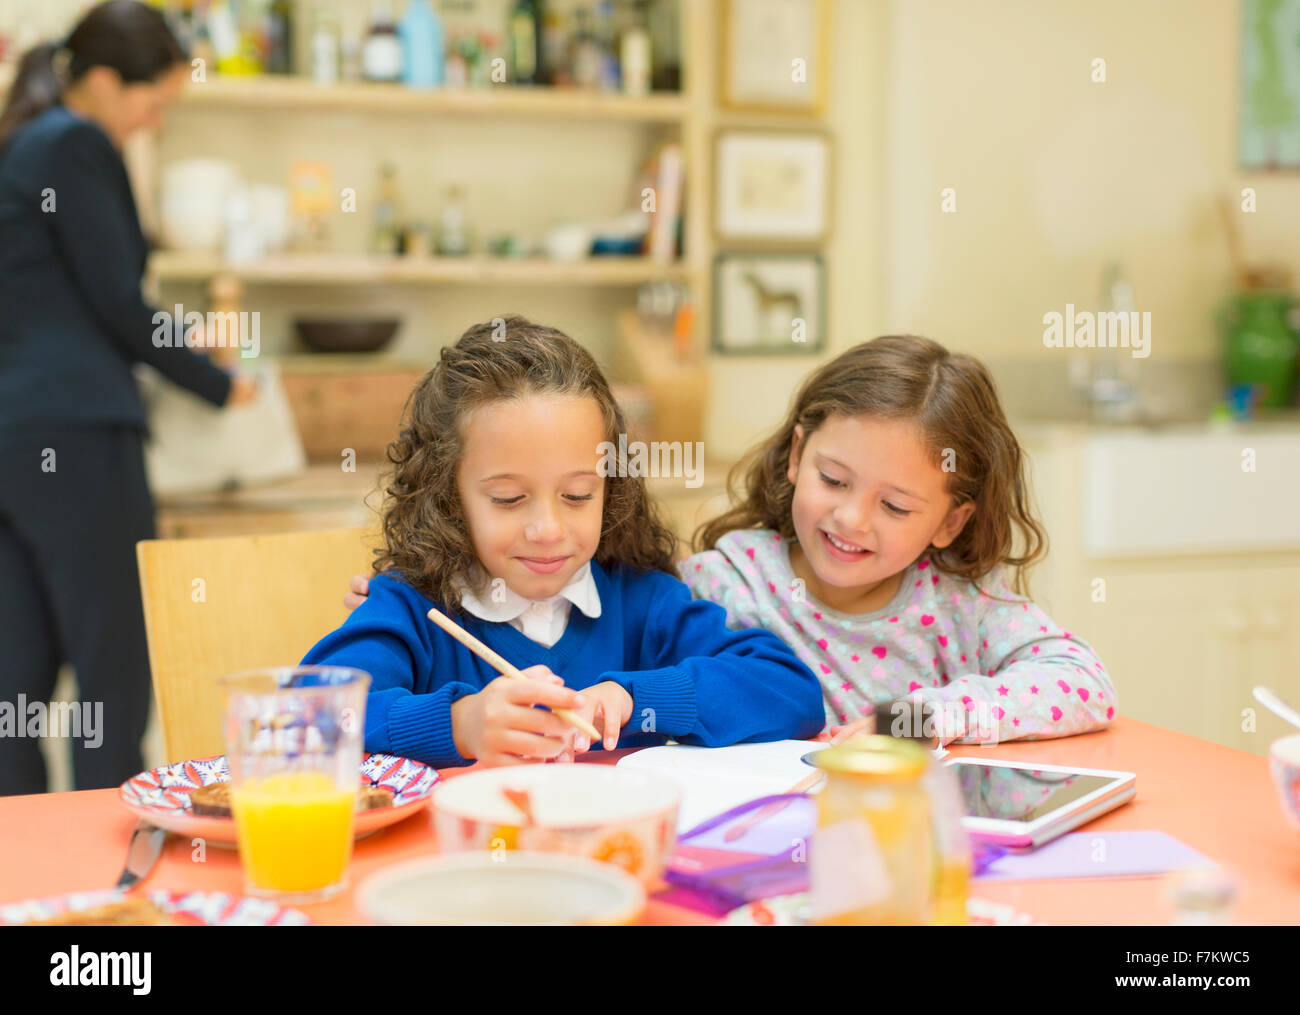 Girls doing homework at breakfast table Stock Photo